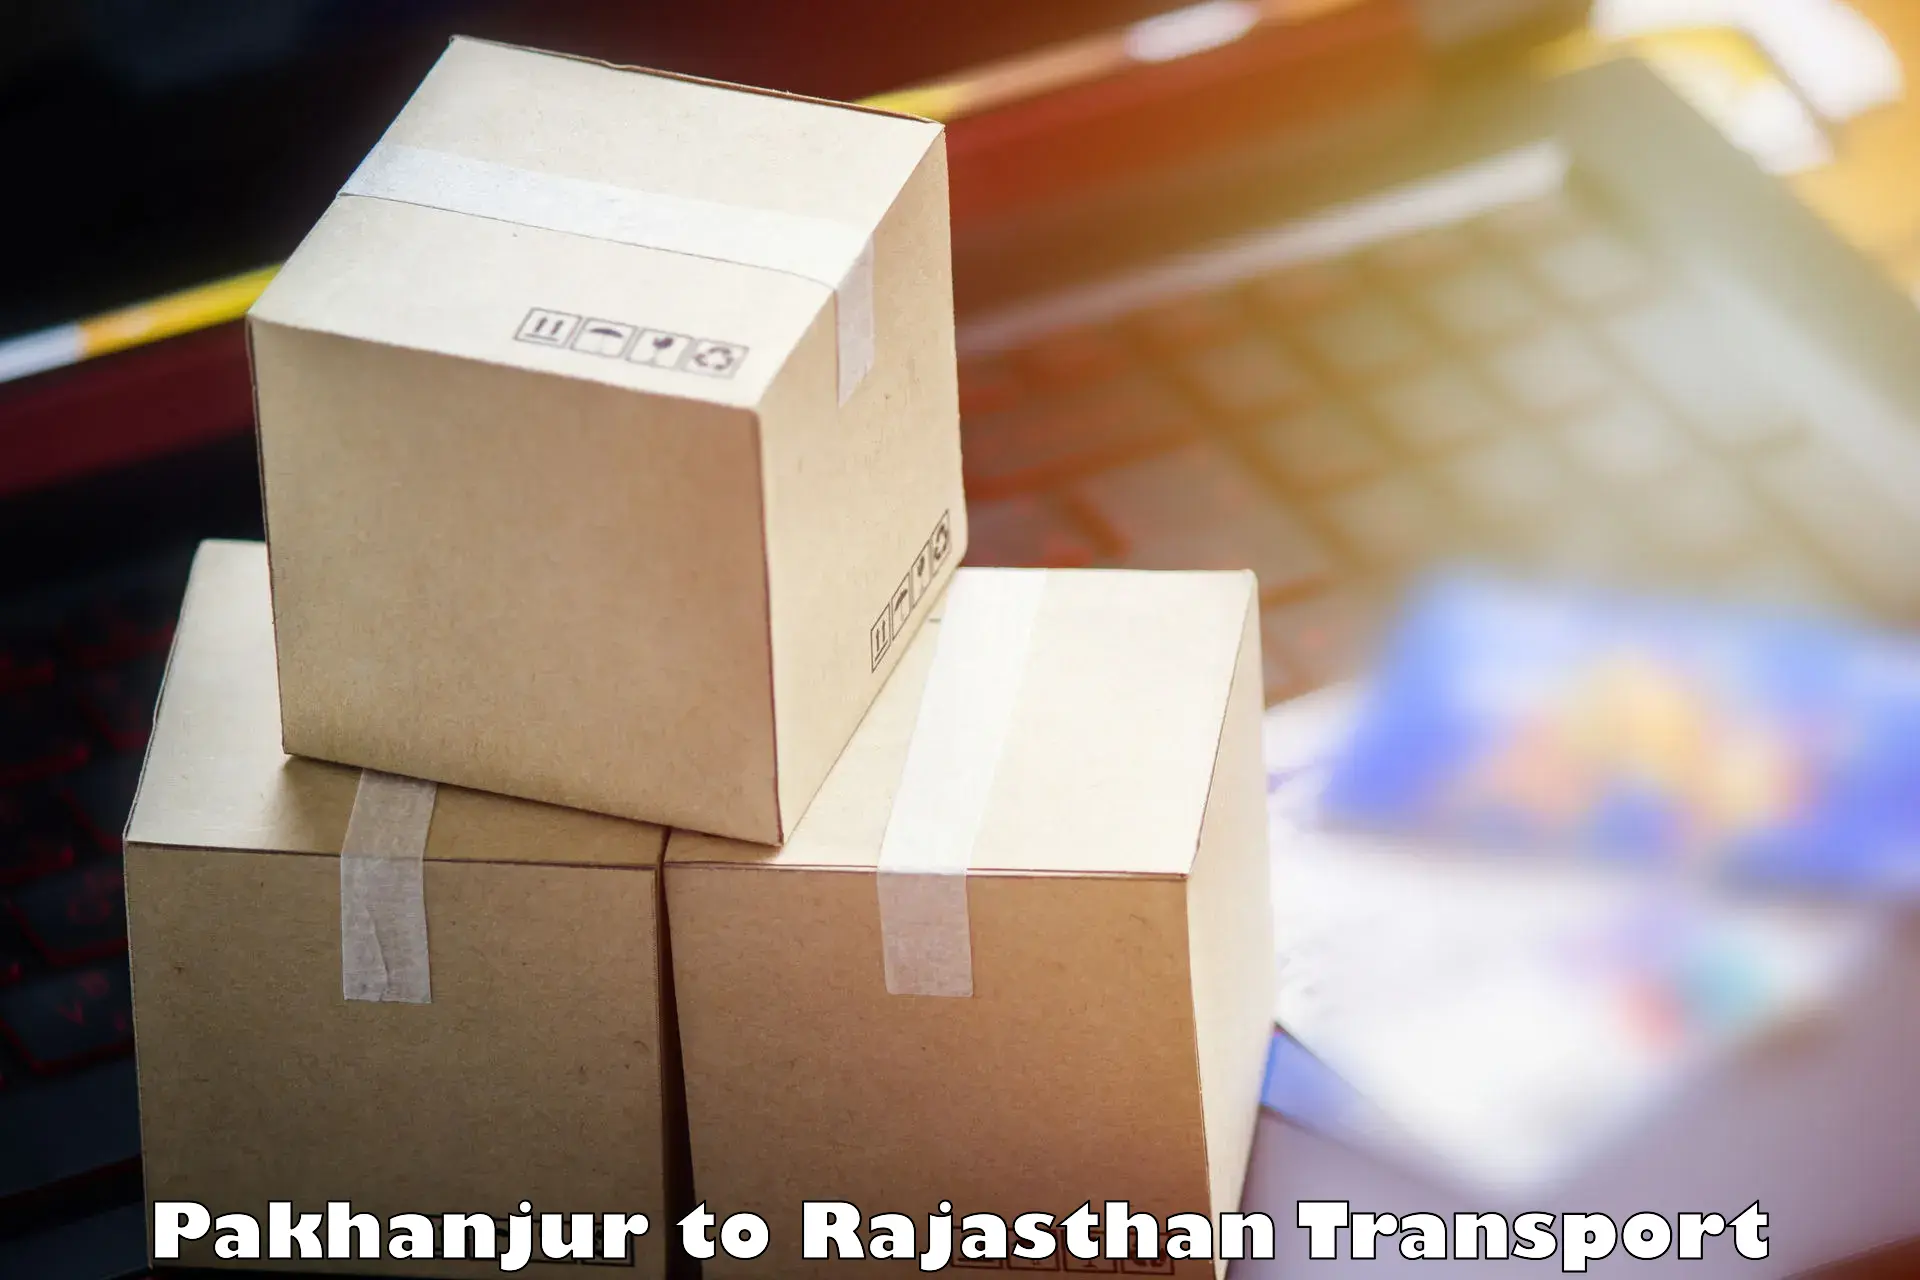 International cargo transportation services Pakhanjur to IIT Jodhpur